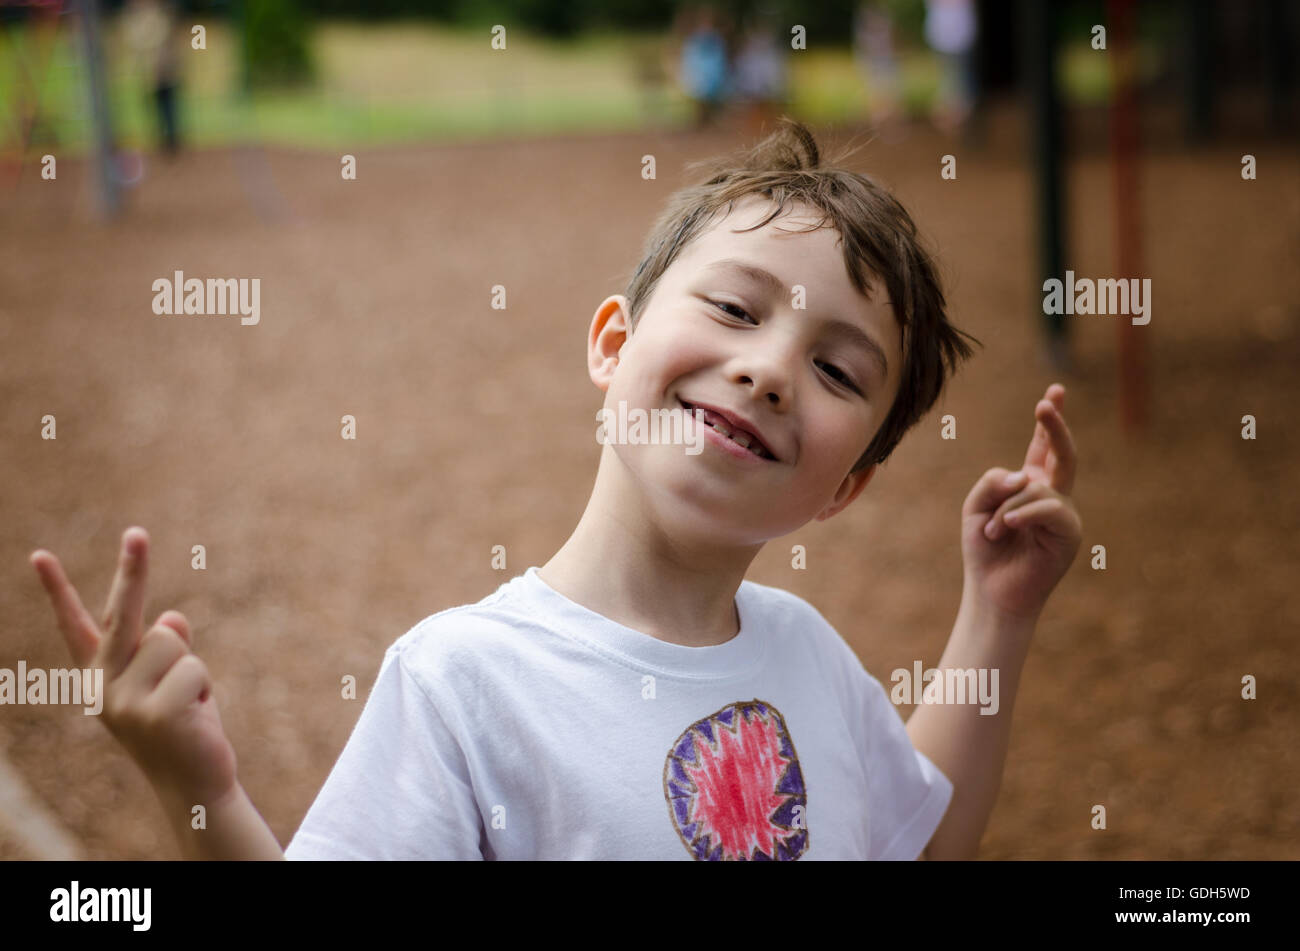 Un jeune garçon pose pour un portrait dans le parc. Banque D'Images